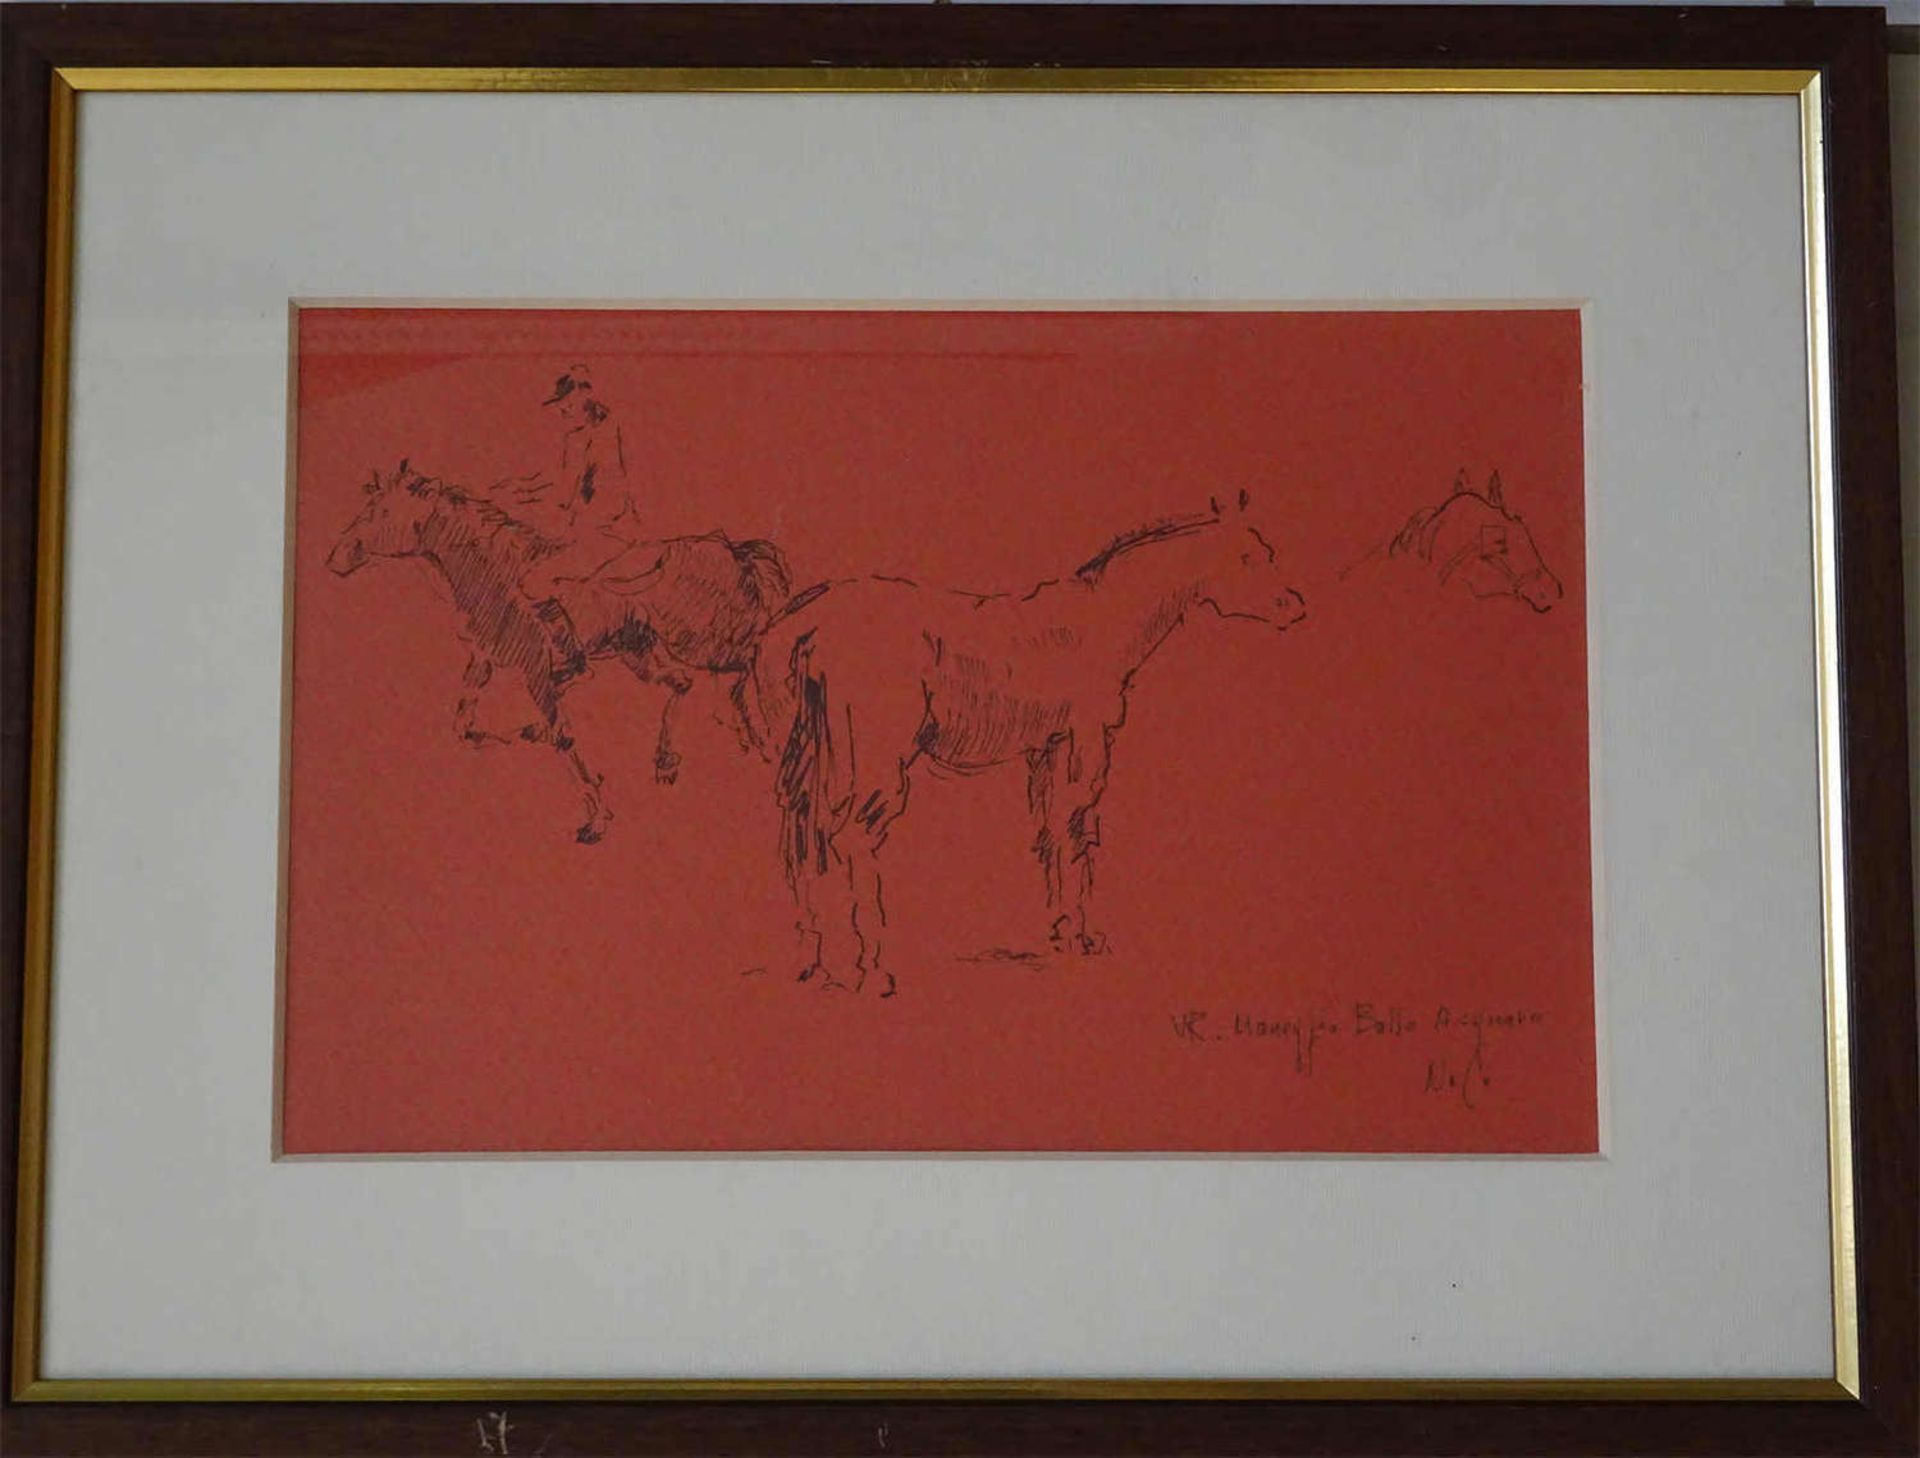 Nino Consolaro 1922-1933. "Pferdestudie" 1974 gemalt, Zeichnung Aquarell, tusche Papier. Maße 25